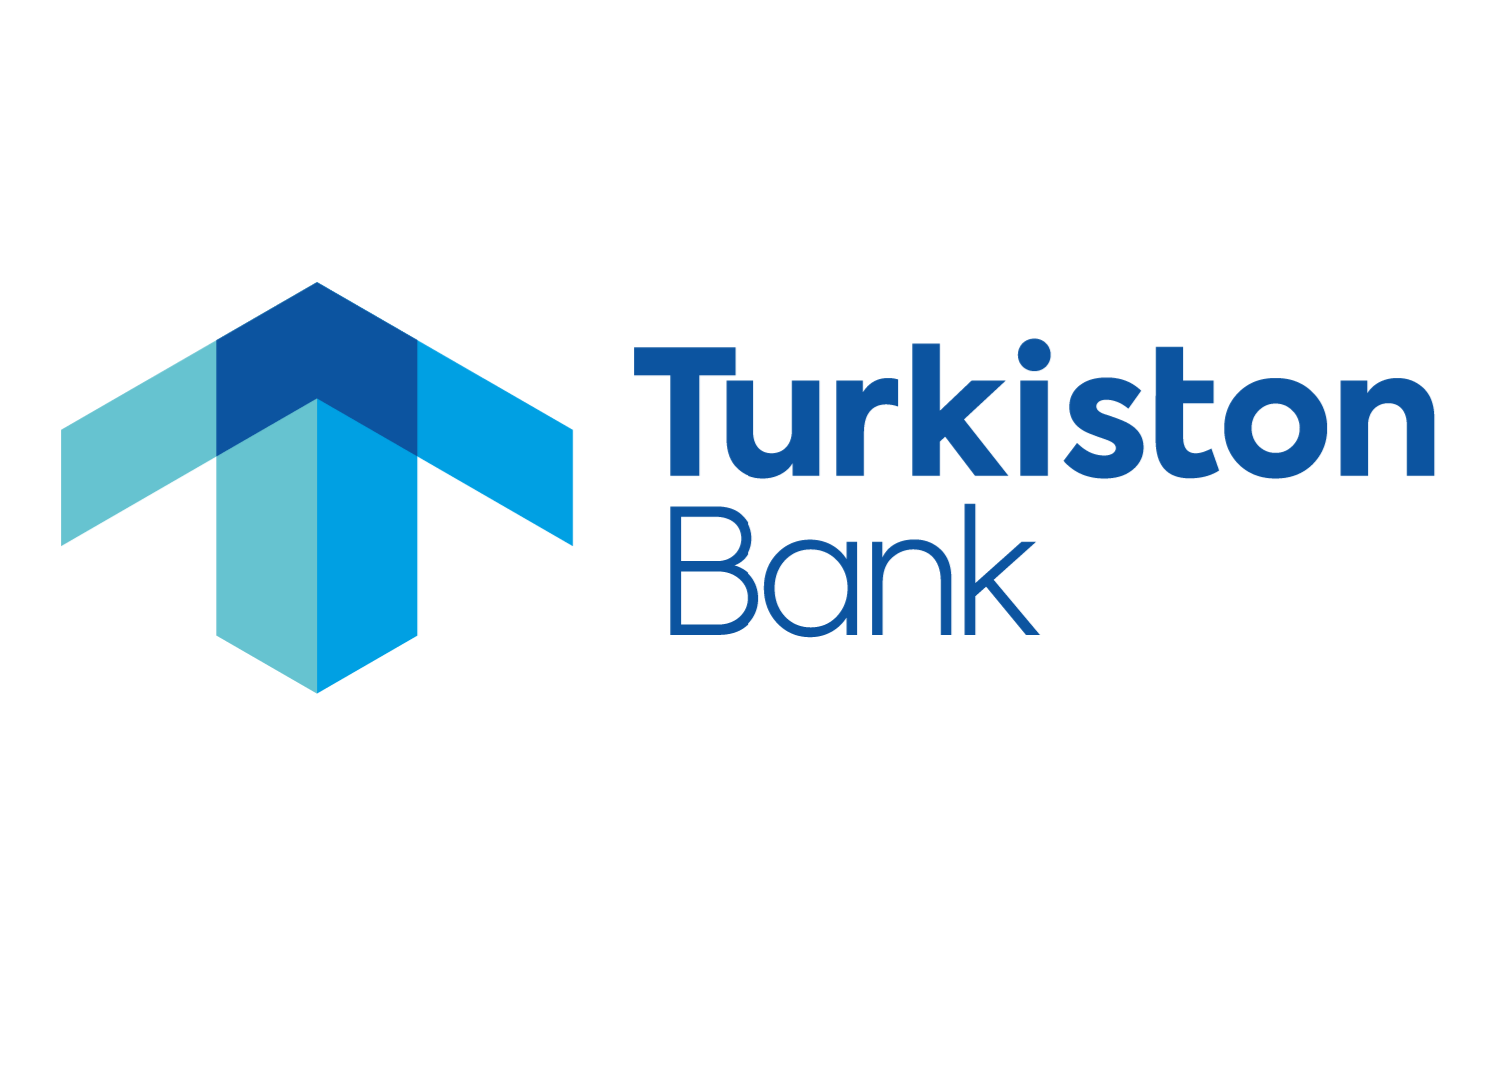 Qurilish bank uz. Логотипы узбекских банков. Банки Узбекистана лого. Логотип банка. Логотип KDB Bank Узбекистан.